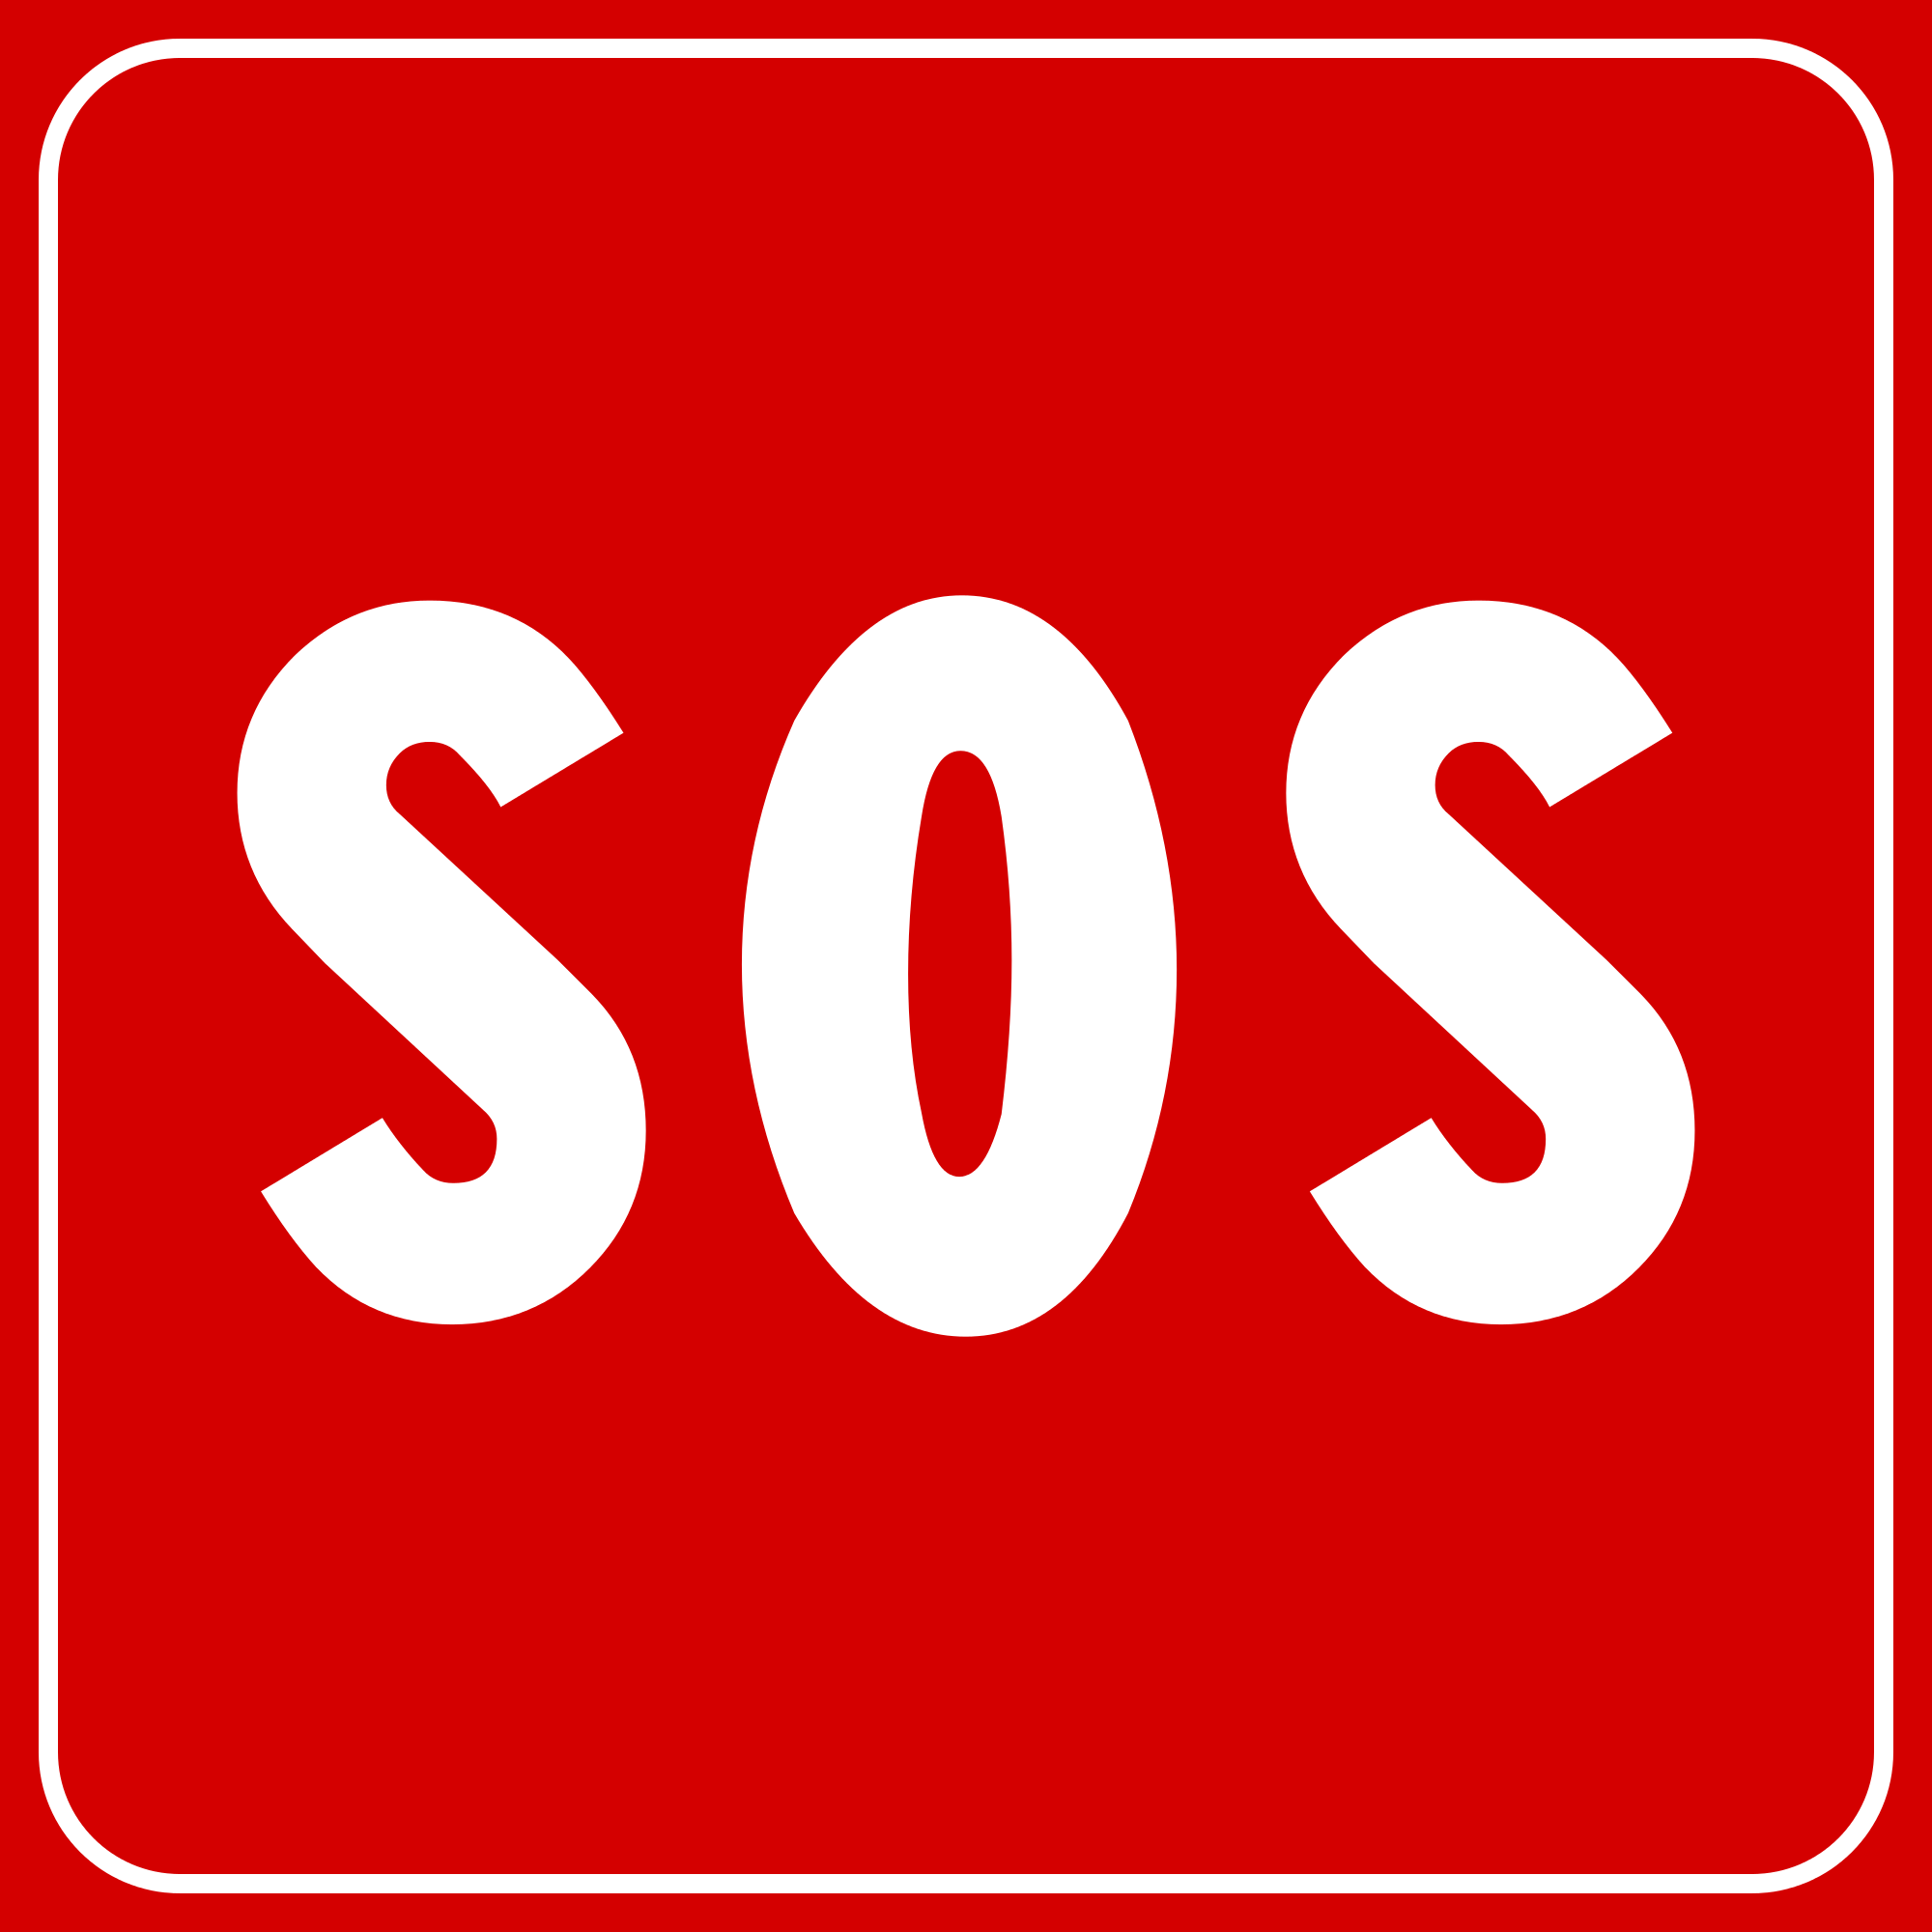 SOS có nghĩa là gì?